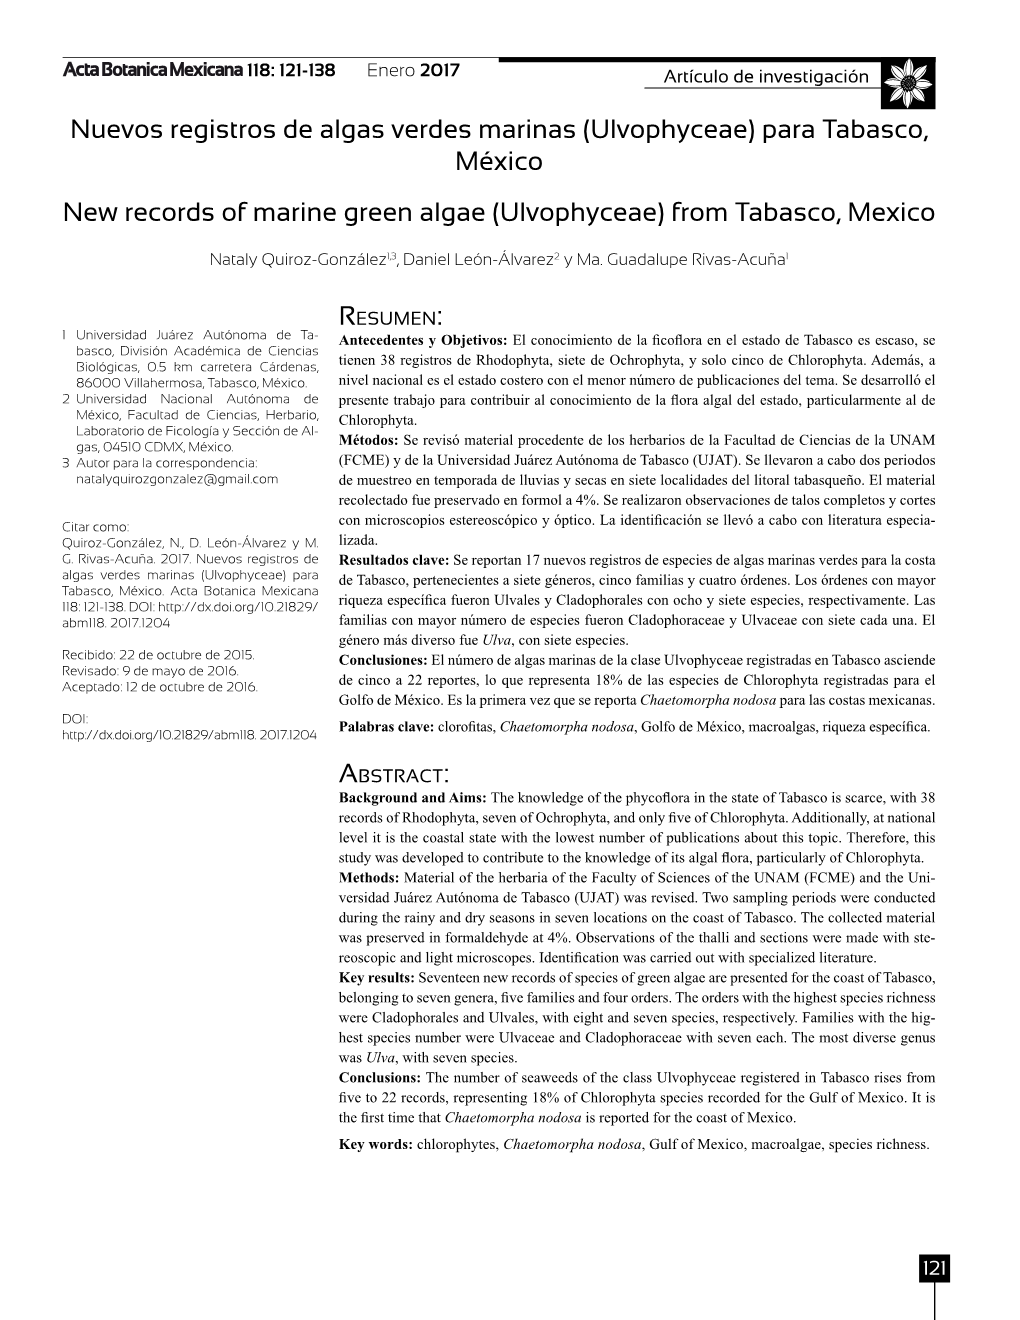 Nuevos Registros De Algas Verdes Marinas (Ulvophyceae) Para Tabasco, México New Records of Marine Green Algae (Ulvophyceae) from Tabasco, Mexico